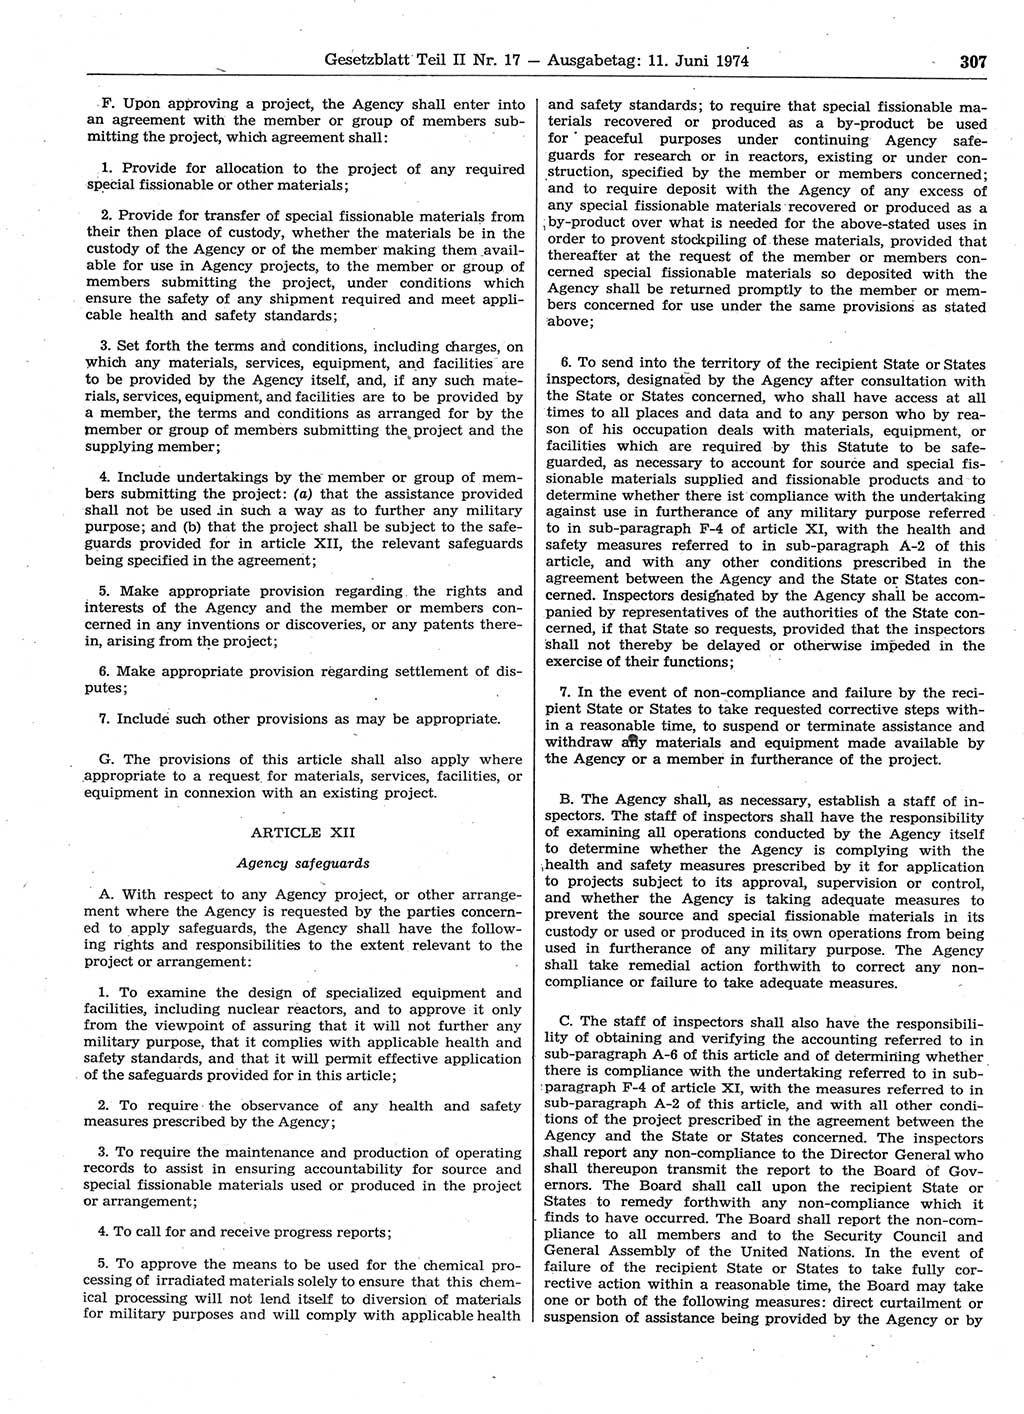 Gesetzblatt (GBl.) der Deutschen Demokratischen Republik (DDR) Teil ⅠⅠ 1974, Seite 307 (GBl. DDR ⅠⅠ 1974, S. 307)